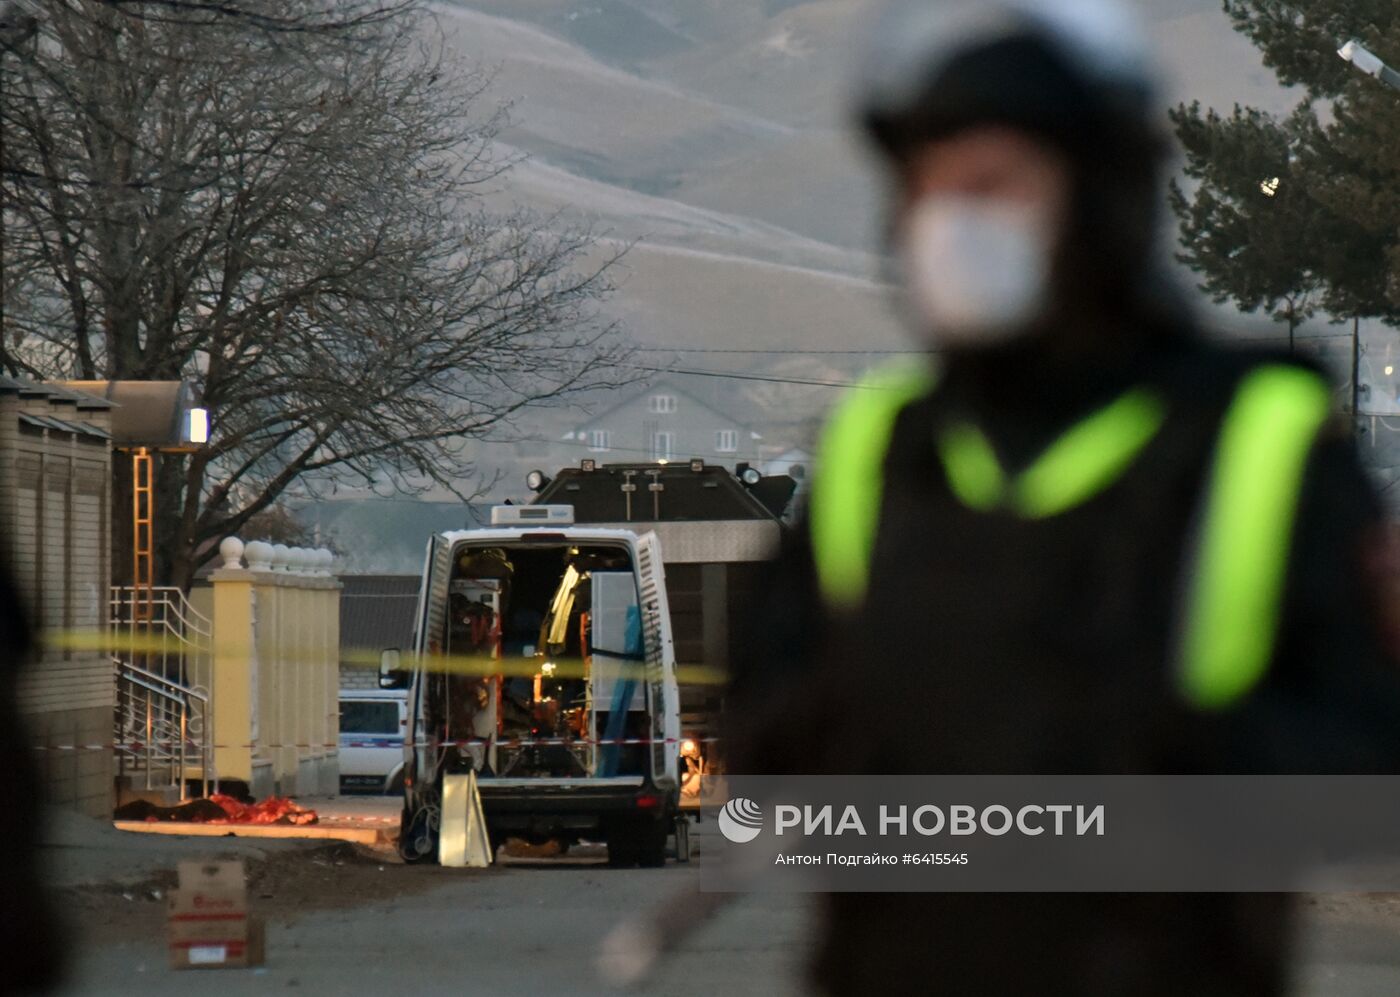  В Карачаево-Черкесии боевик совершил самопродрыв при попытке задержания